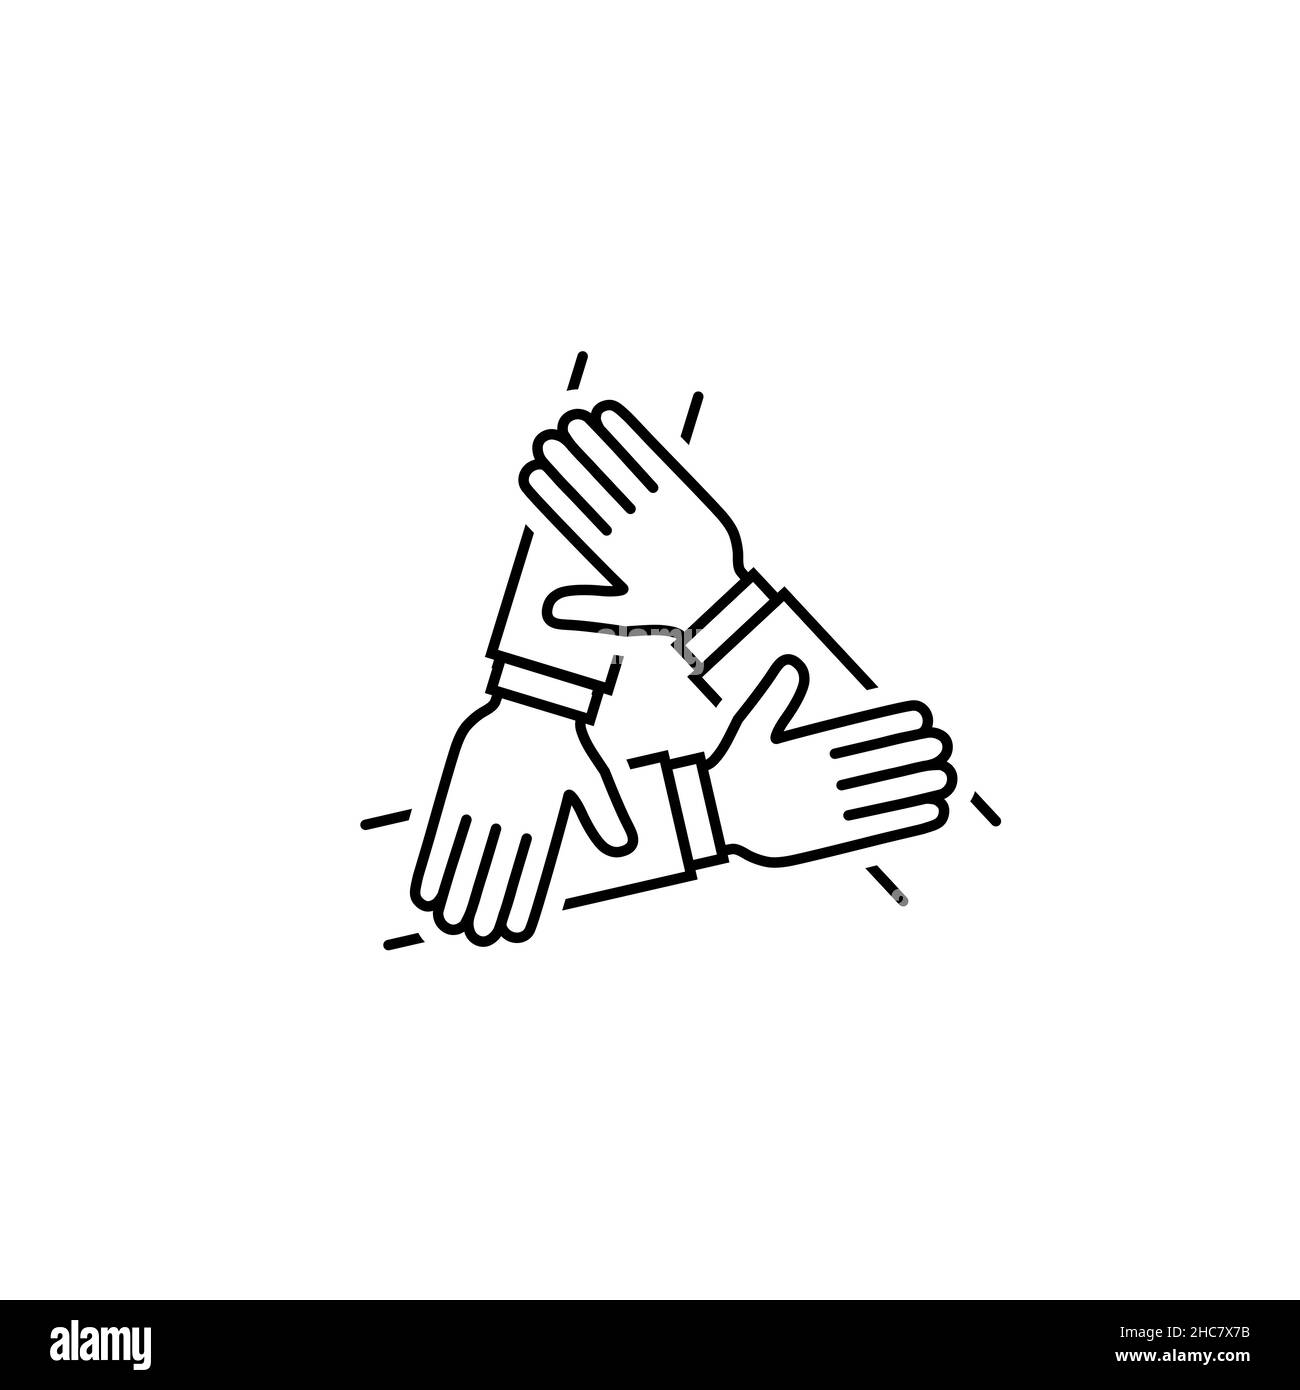 Drei Hände unterstützen sich gegenseitig Vektor-Symbol. Teamwork Symbol einfaches Partnerschaftszeichen isoliert auf weißem Hintergrund. Abstraktes Kooperations-Icon in schwarz M Stock Vektor